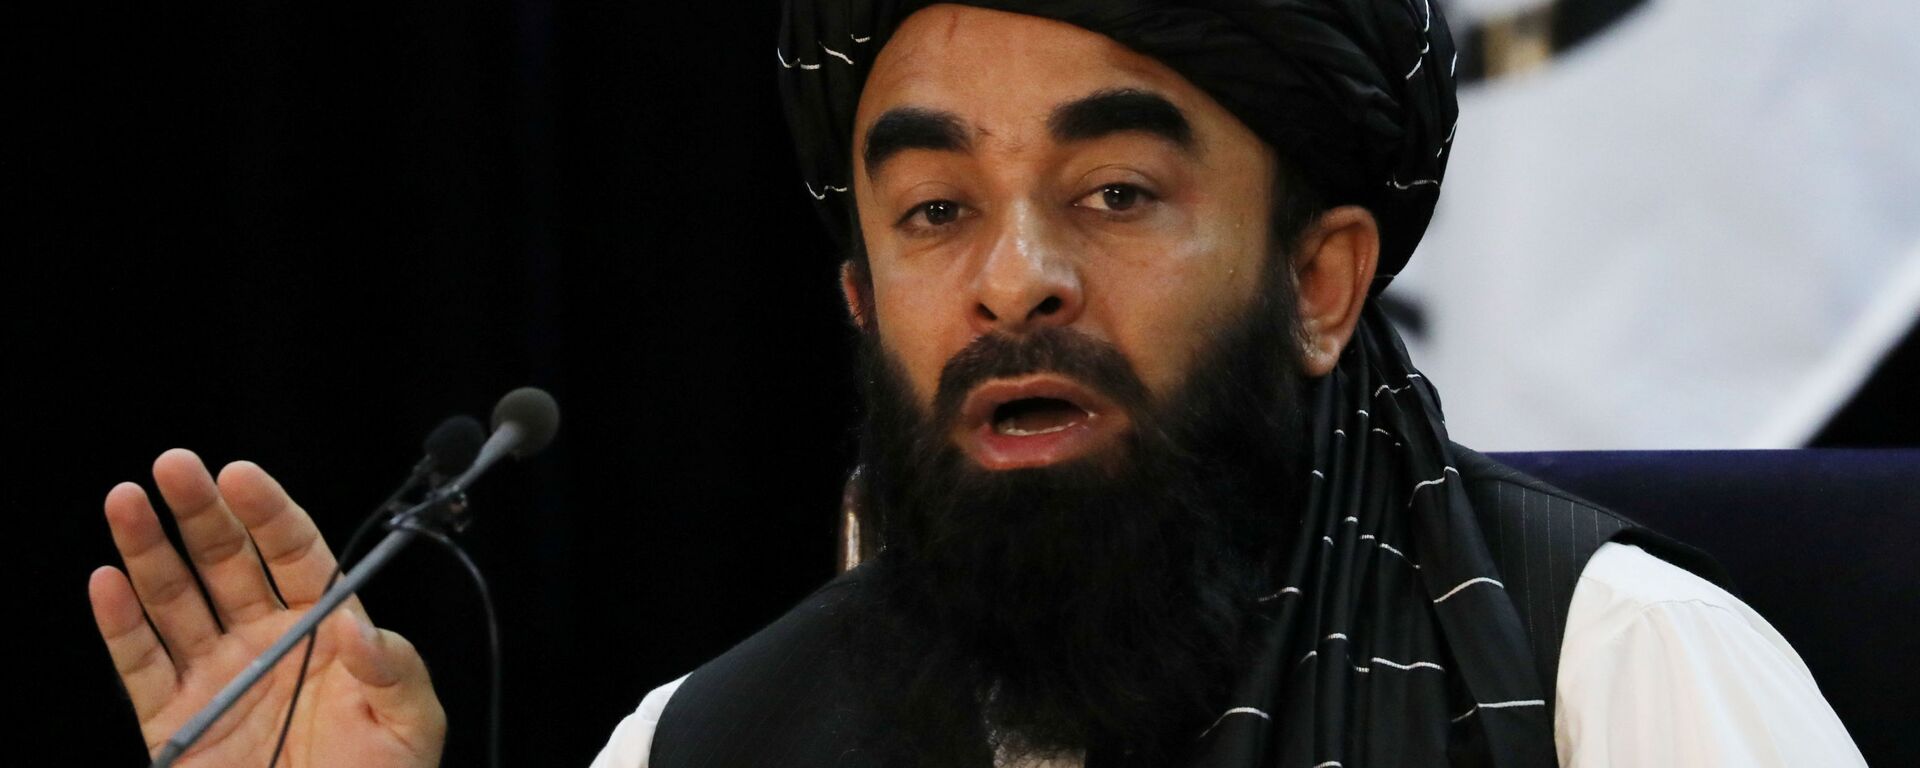 ممثل حركة طالبان (المحظورة في روسيا) ذبيح الله مجاهد في كابول، أفغانستان 6 سبتمبر 2021 - سبوتنيك عربي, 1920, 27.12.2021